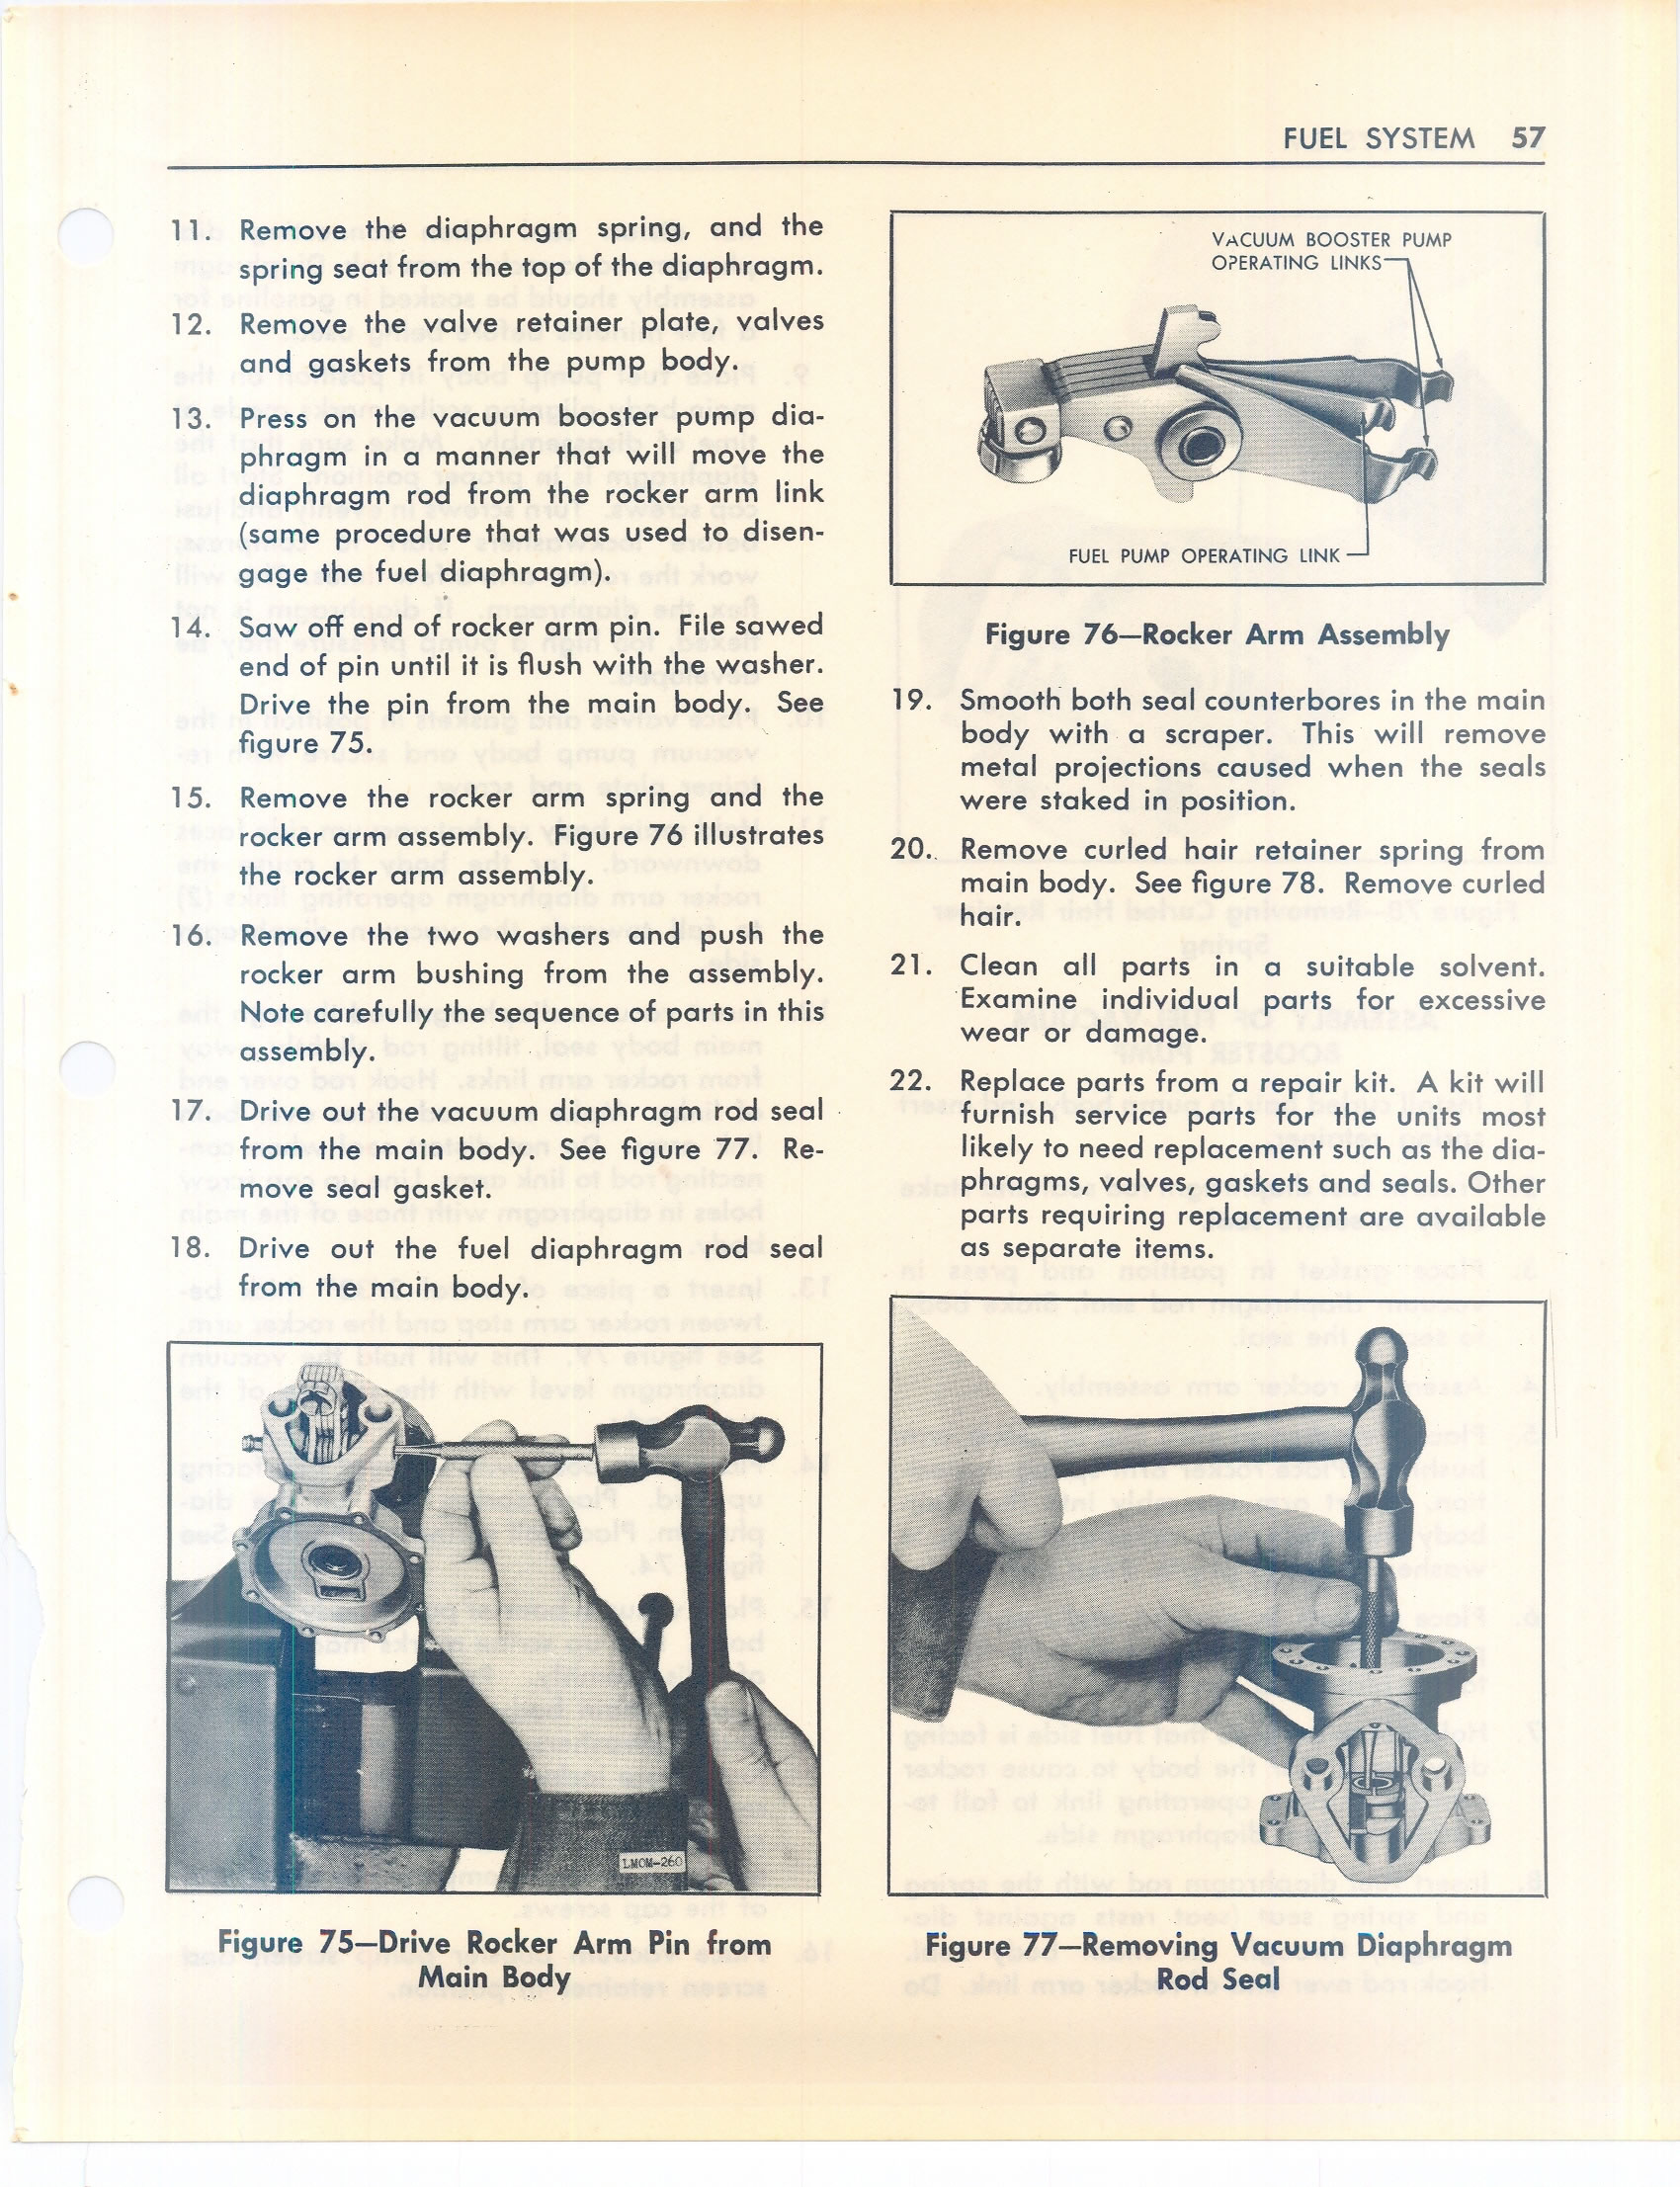 1949-1951 Ford Fuel System Repair Manual ...